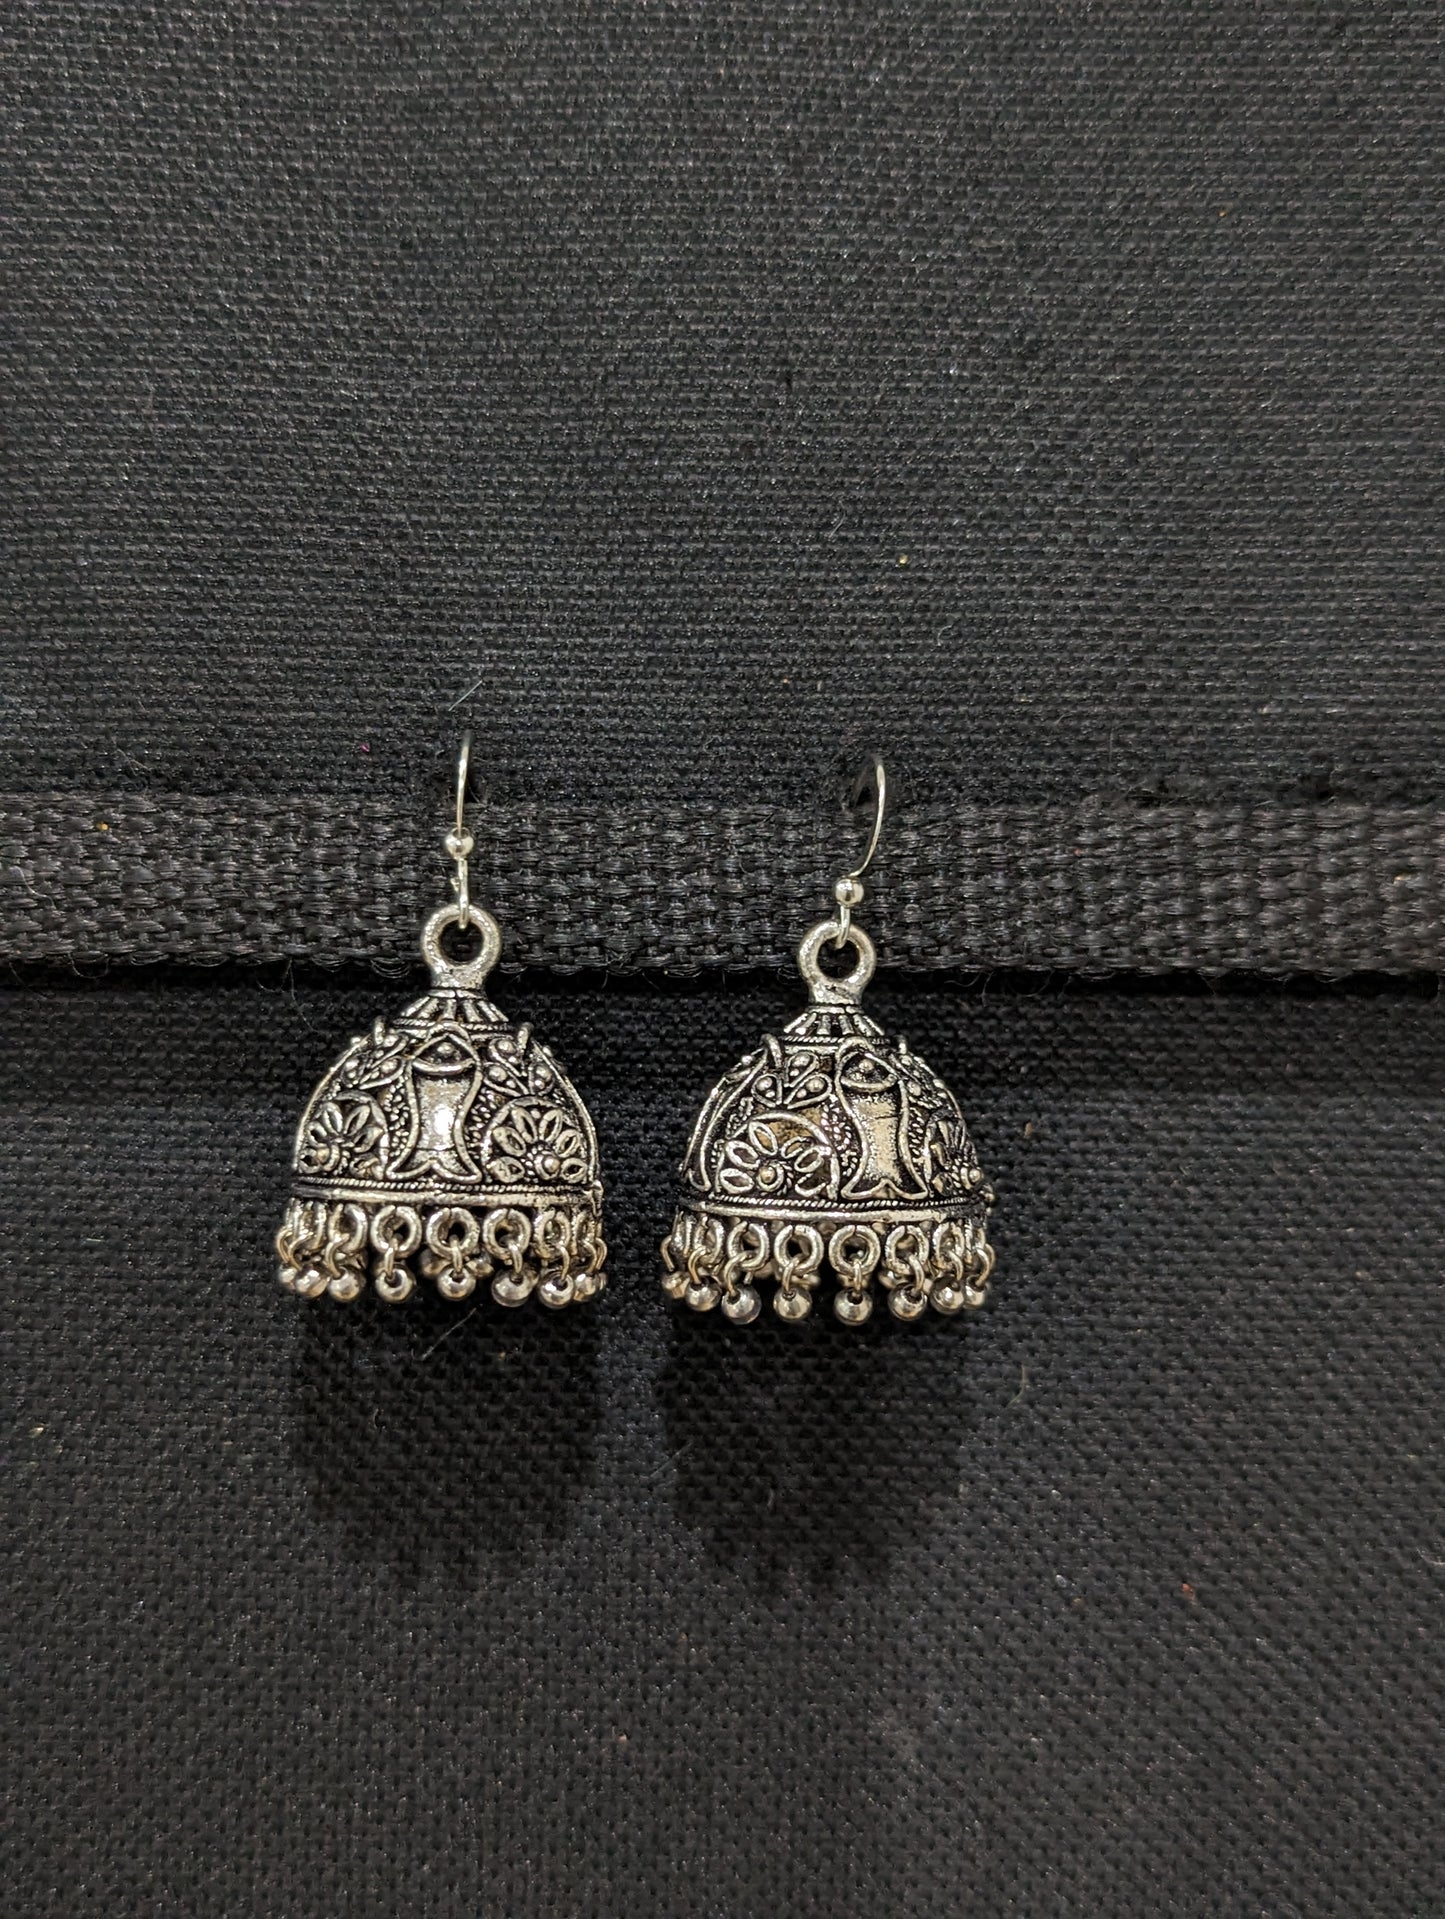 Oxidzed silver hook drop jhumka Earrings - 5 designs